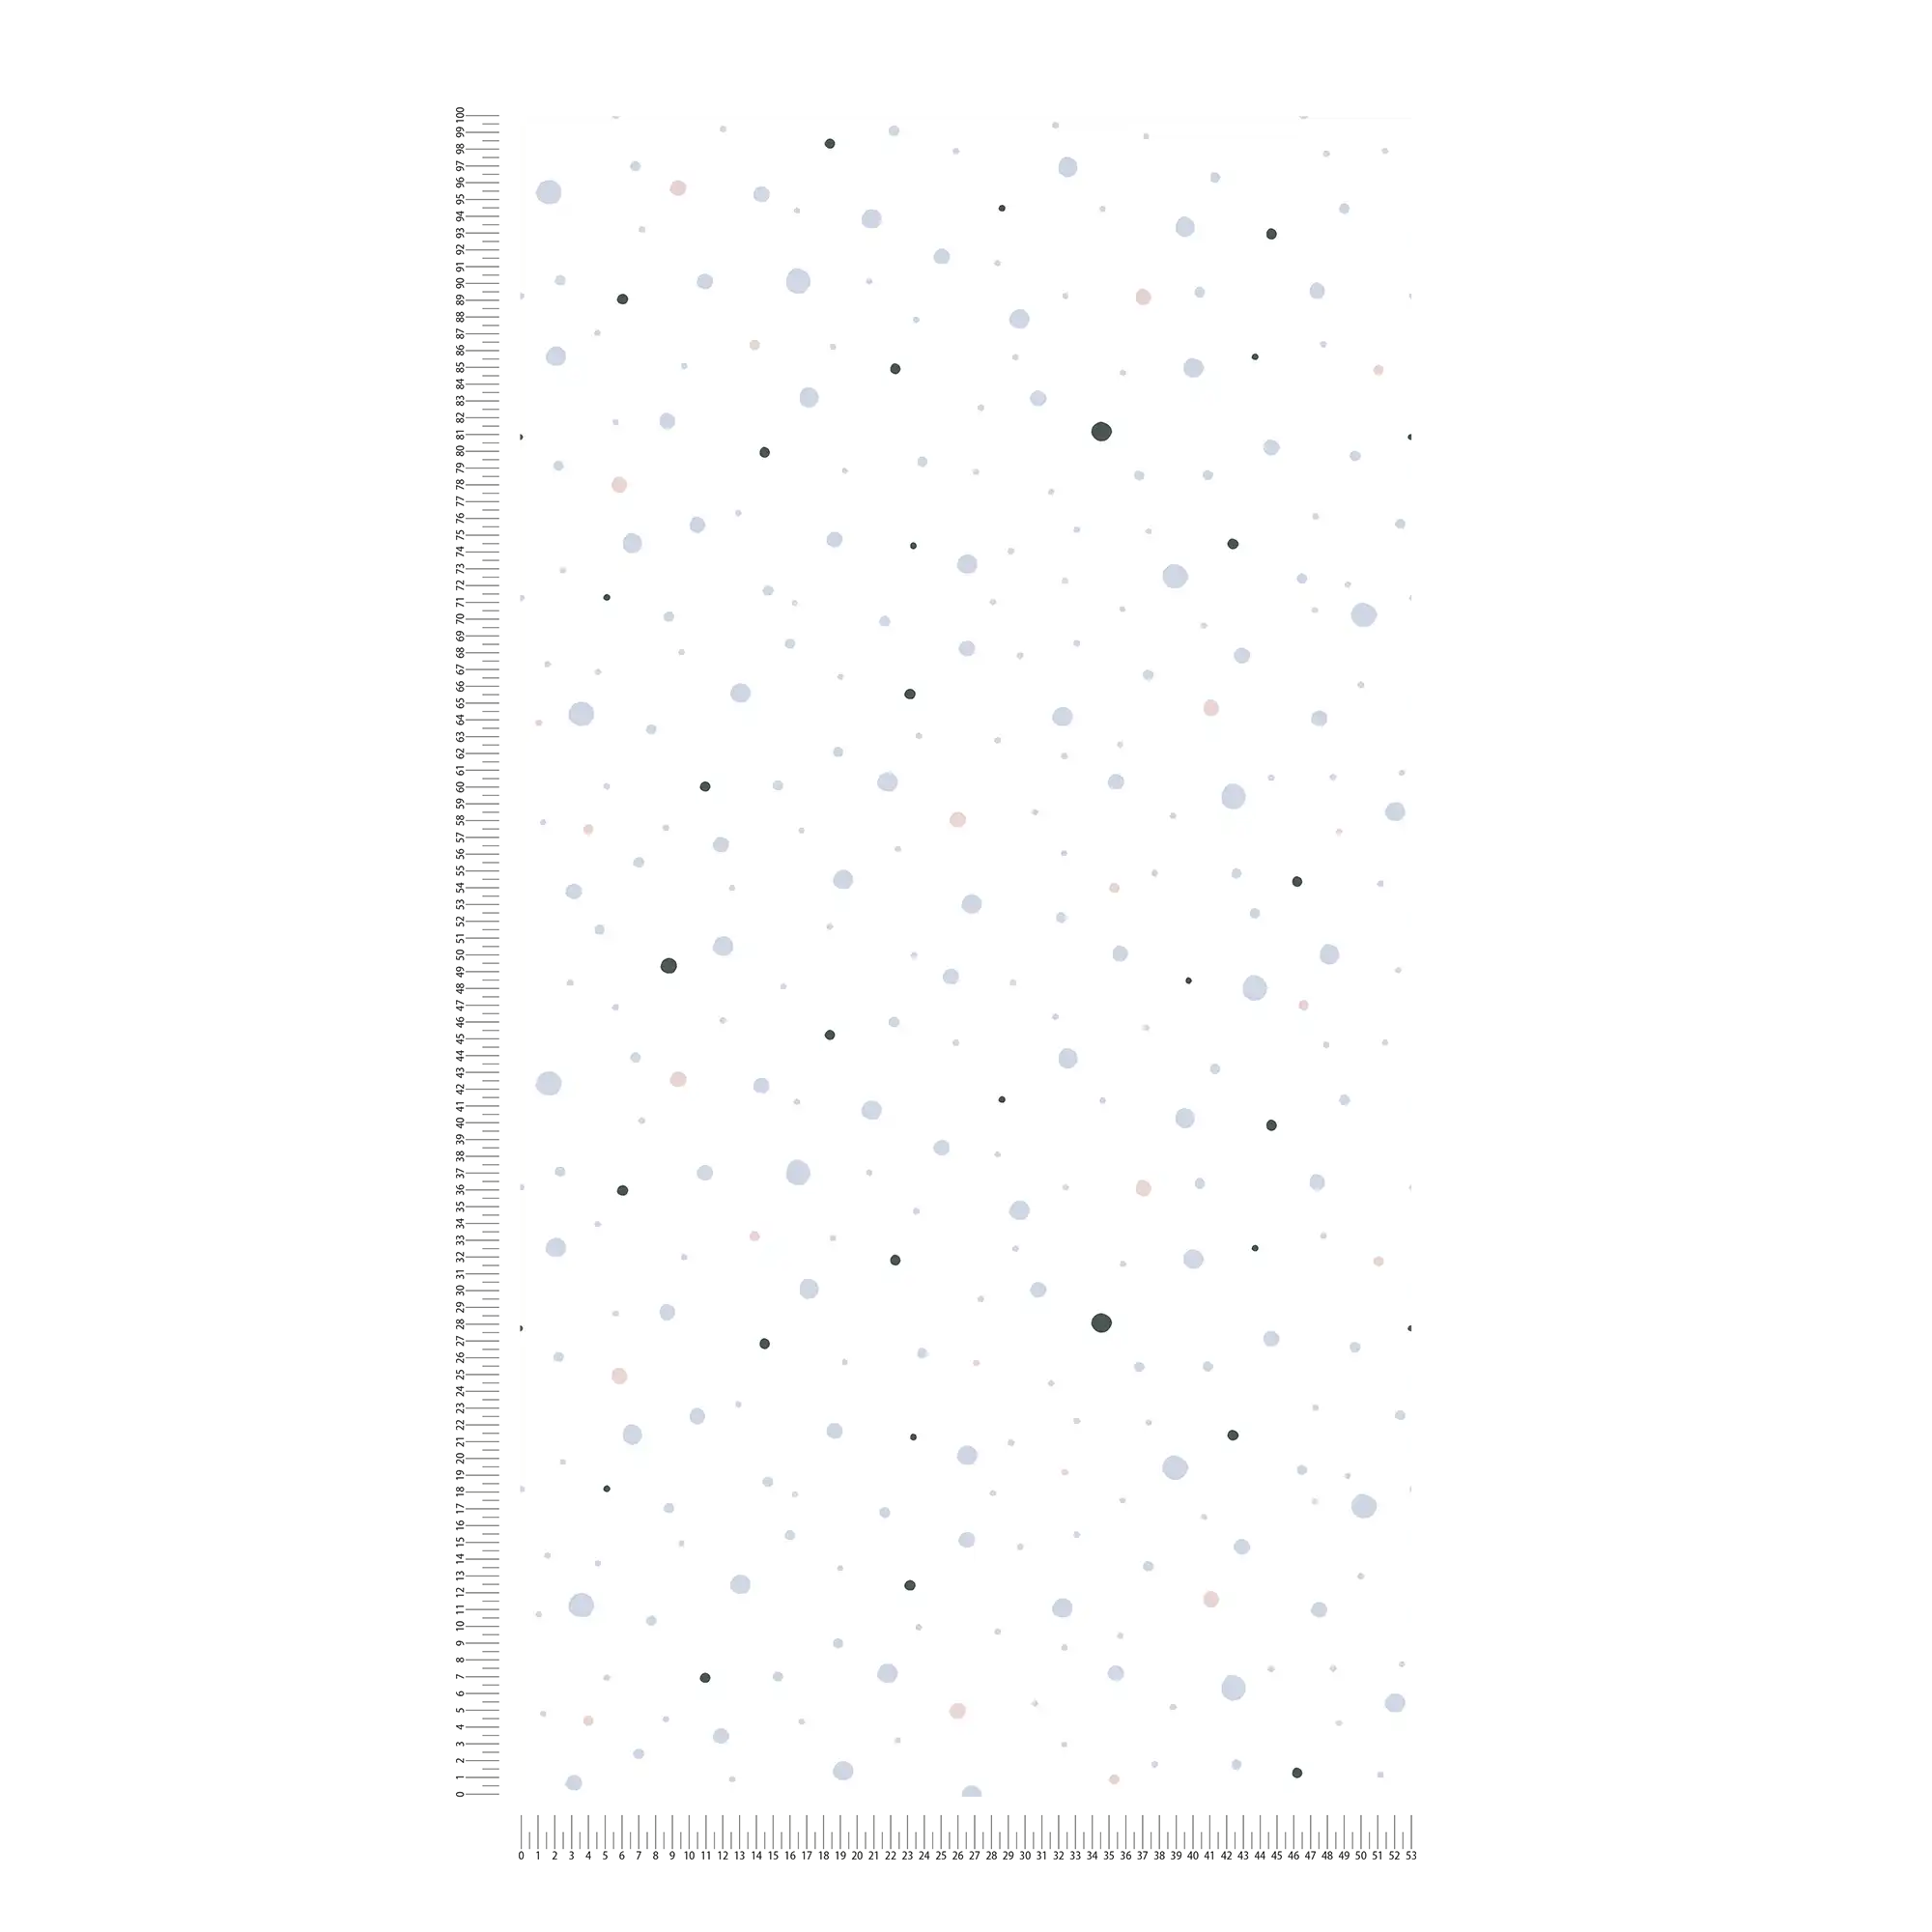             Nursery wallpaper dots - grey, black, white
        